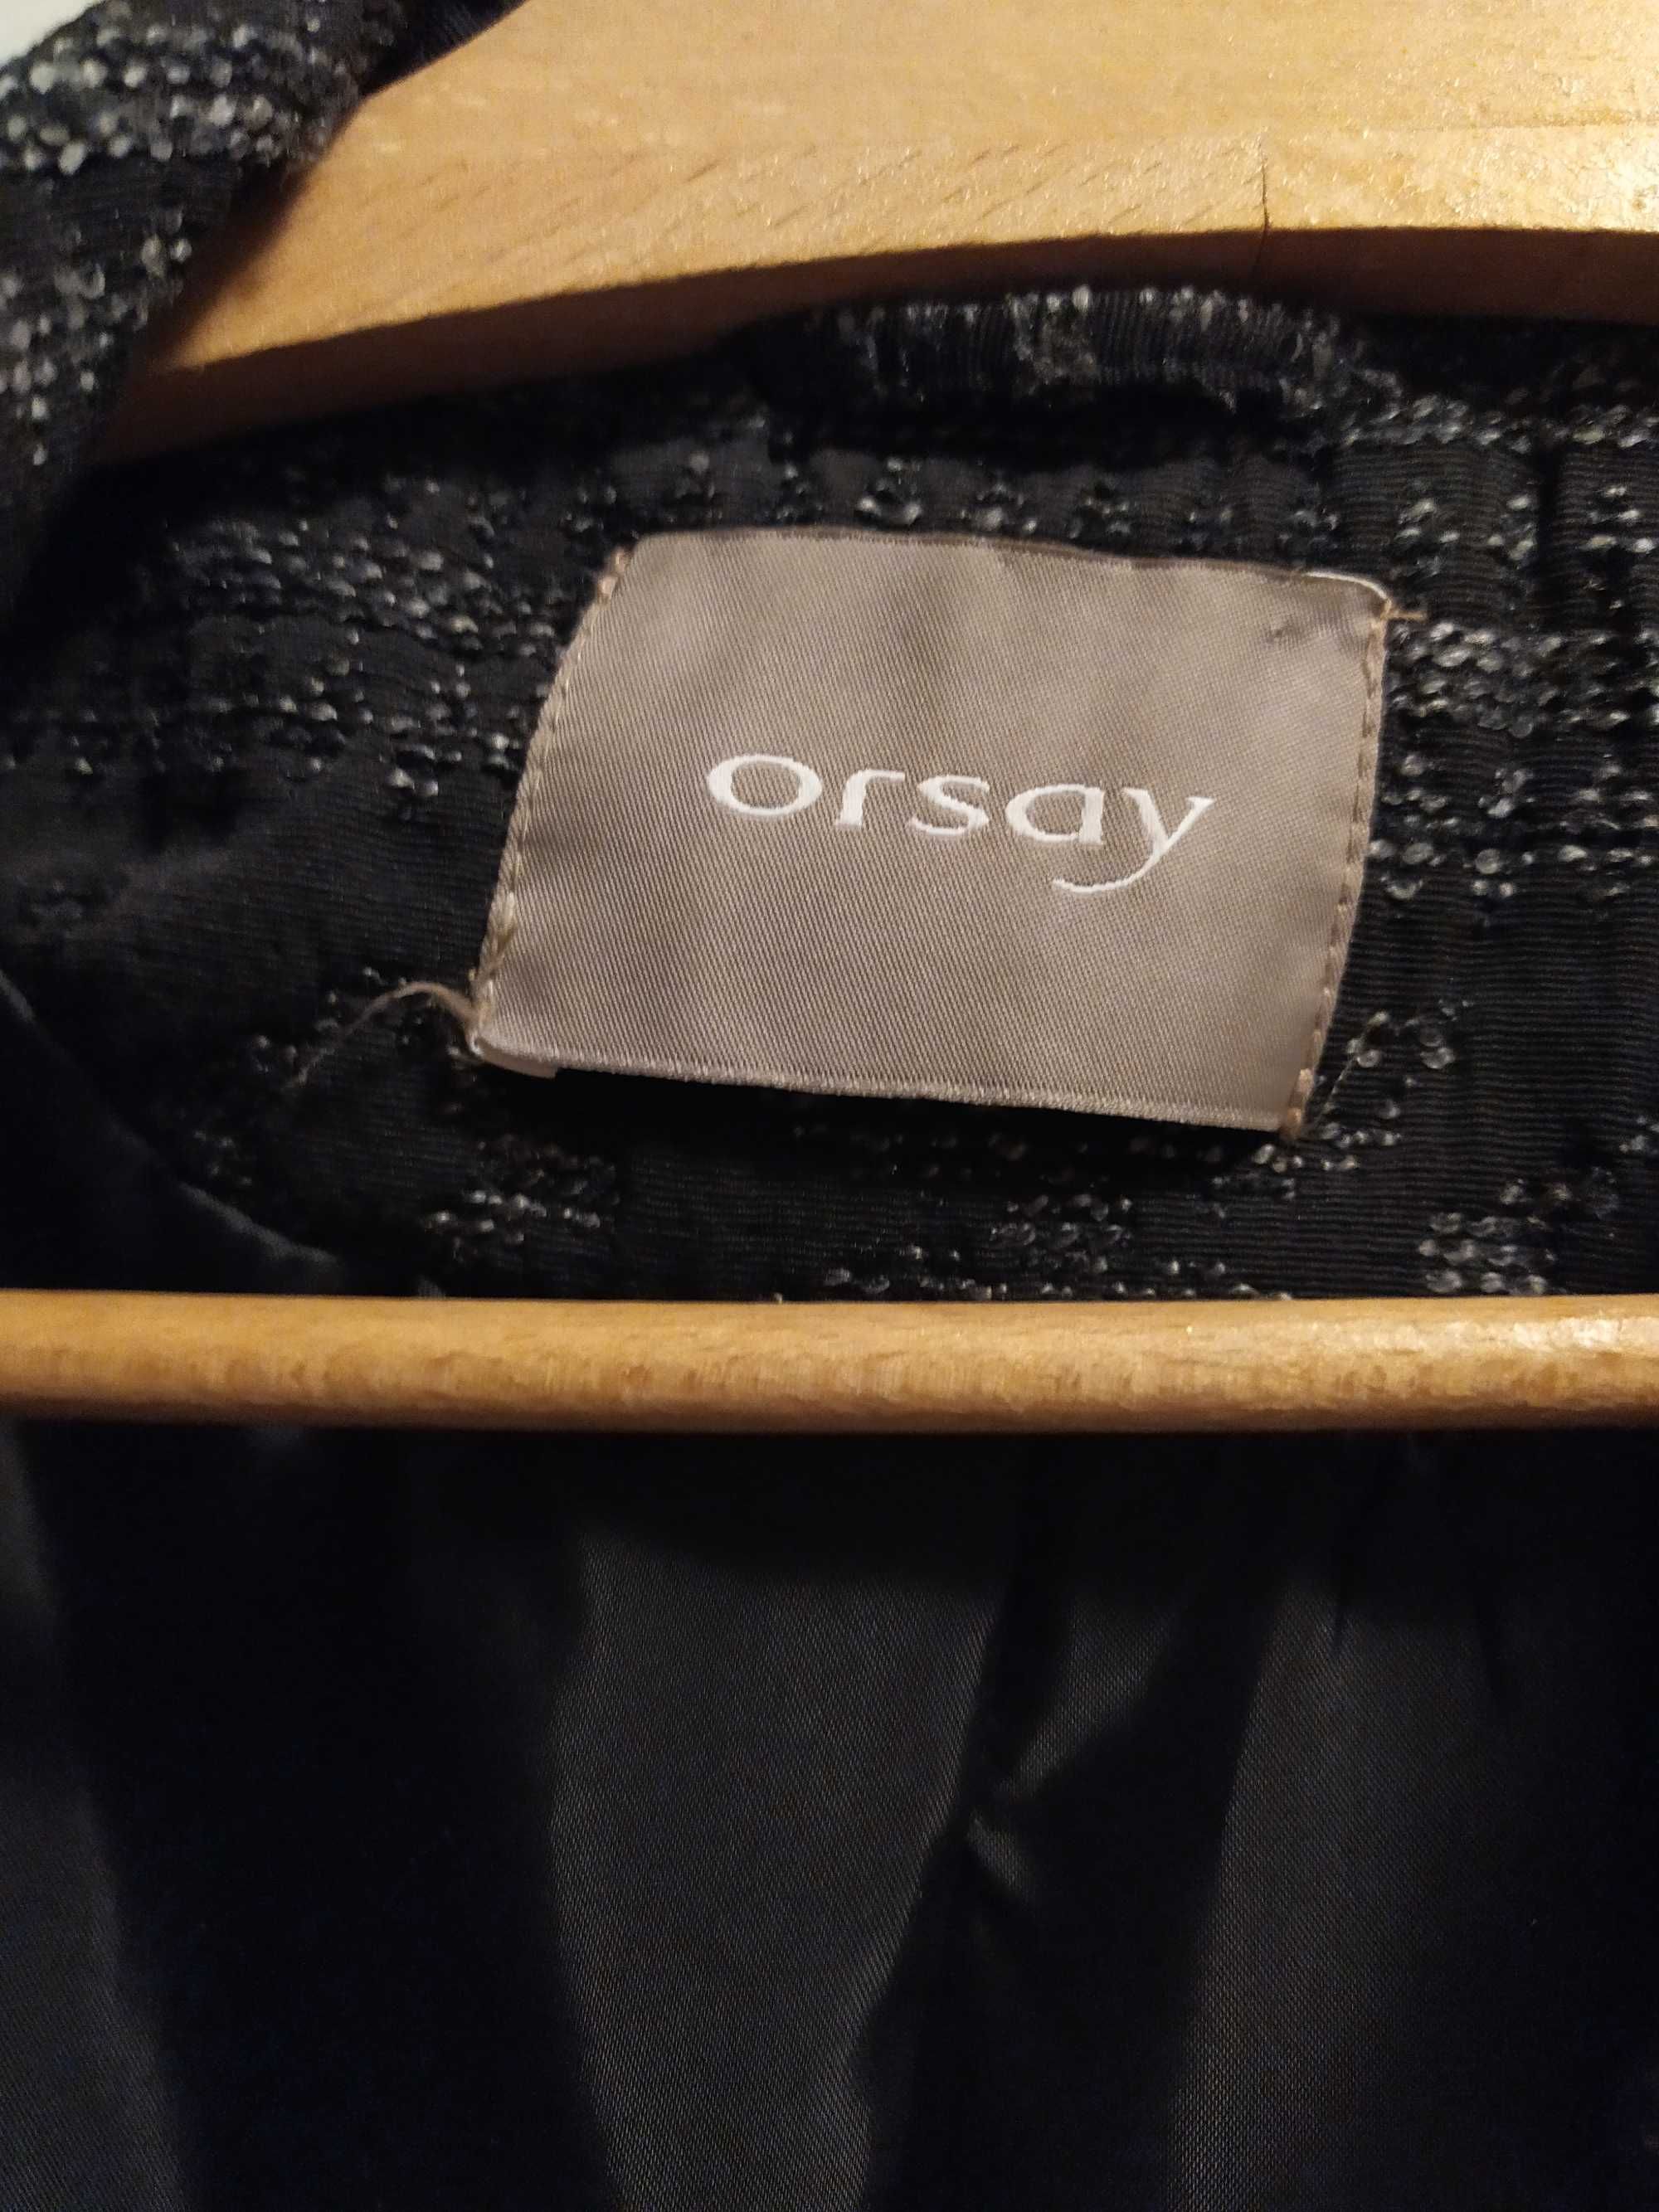 Płaszczyk żakiet Orsay czarno szary rozmiar 40